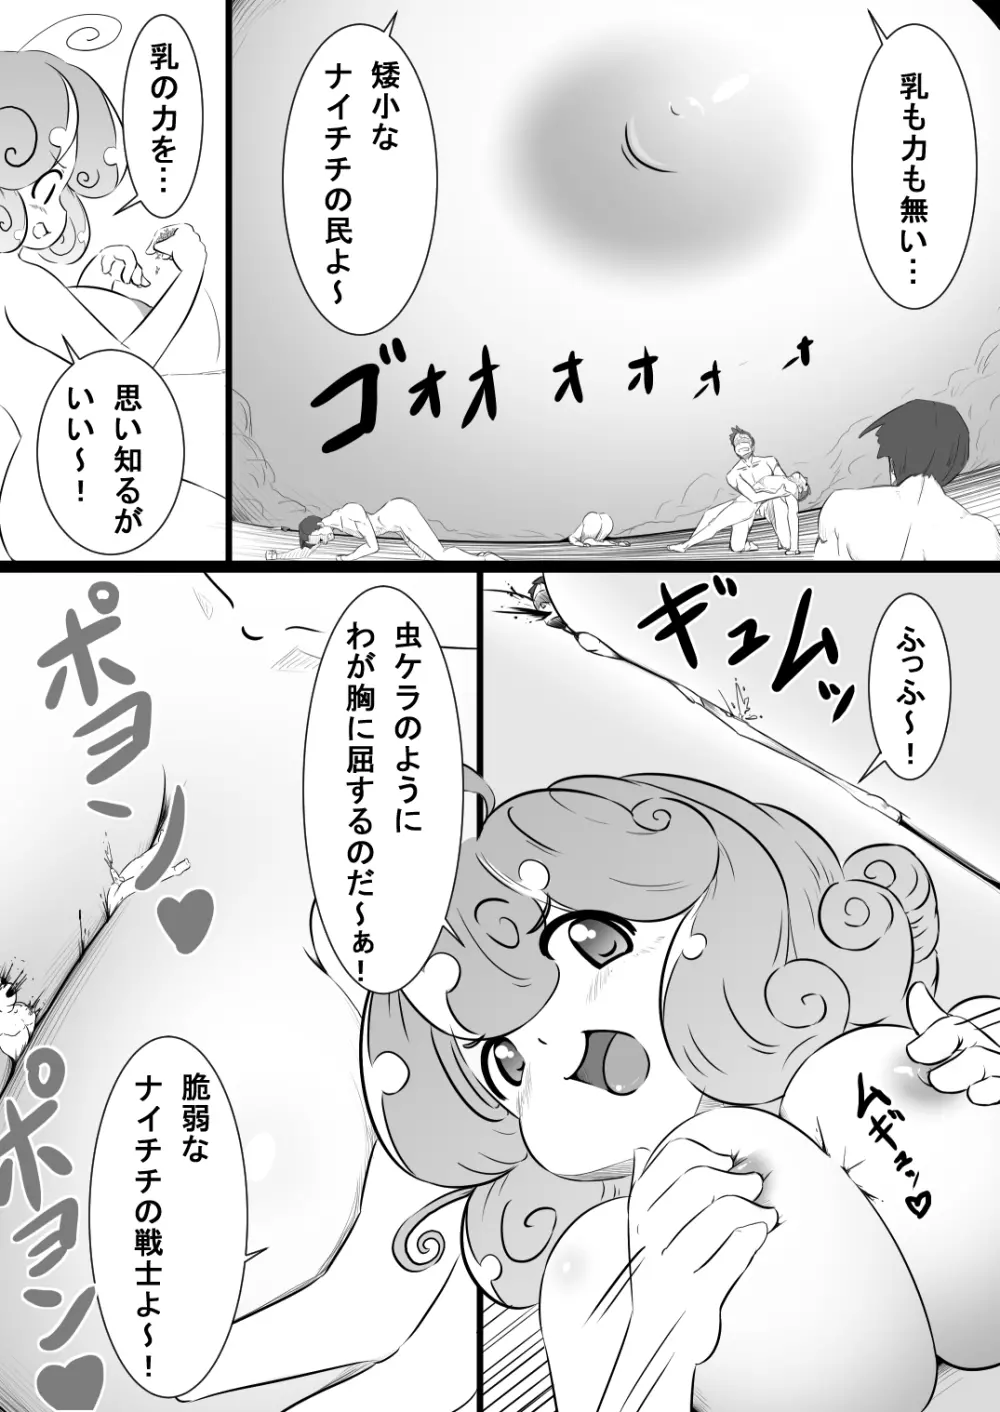 Rakugaki Manga 5 2ページ